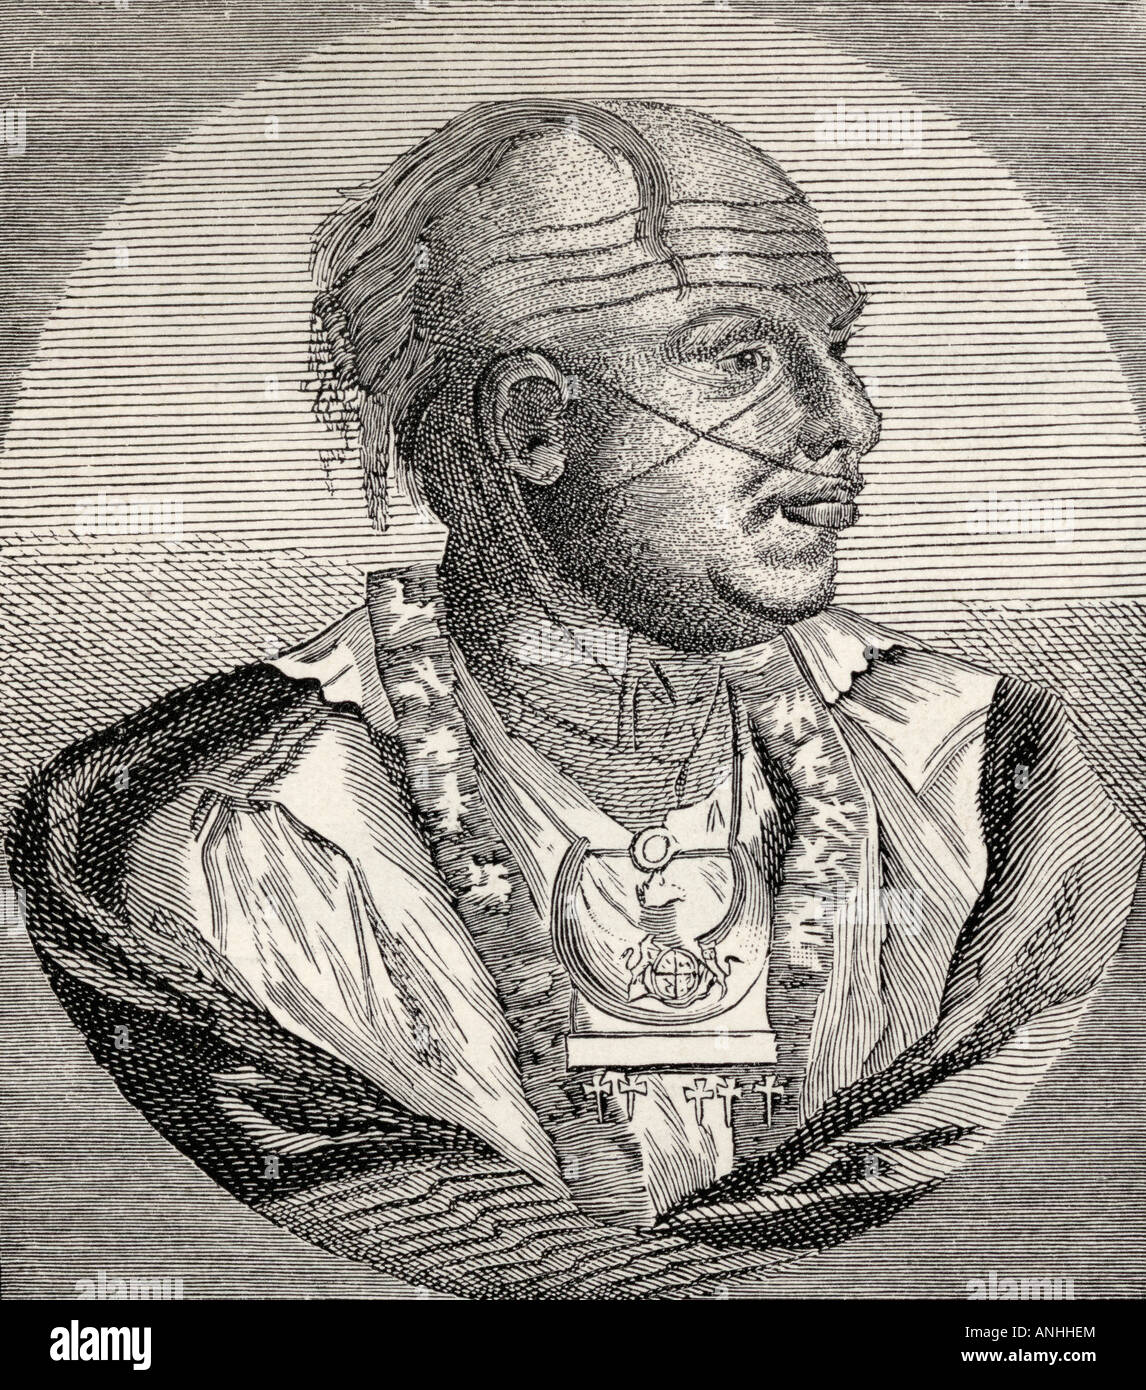 Outacite Ostenaco, c.1703- c.1780. Jefe de los Cherokees. Grabado de una vieja impresión. Foto de stock